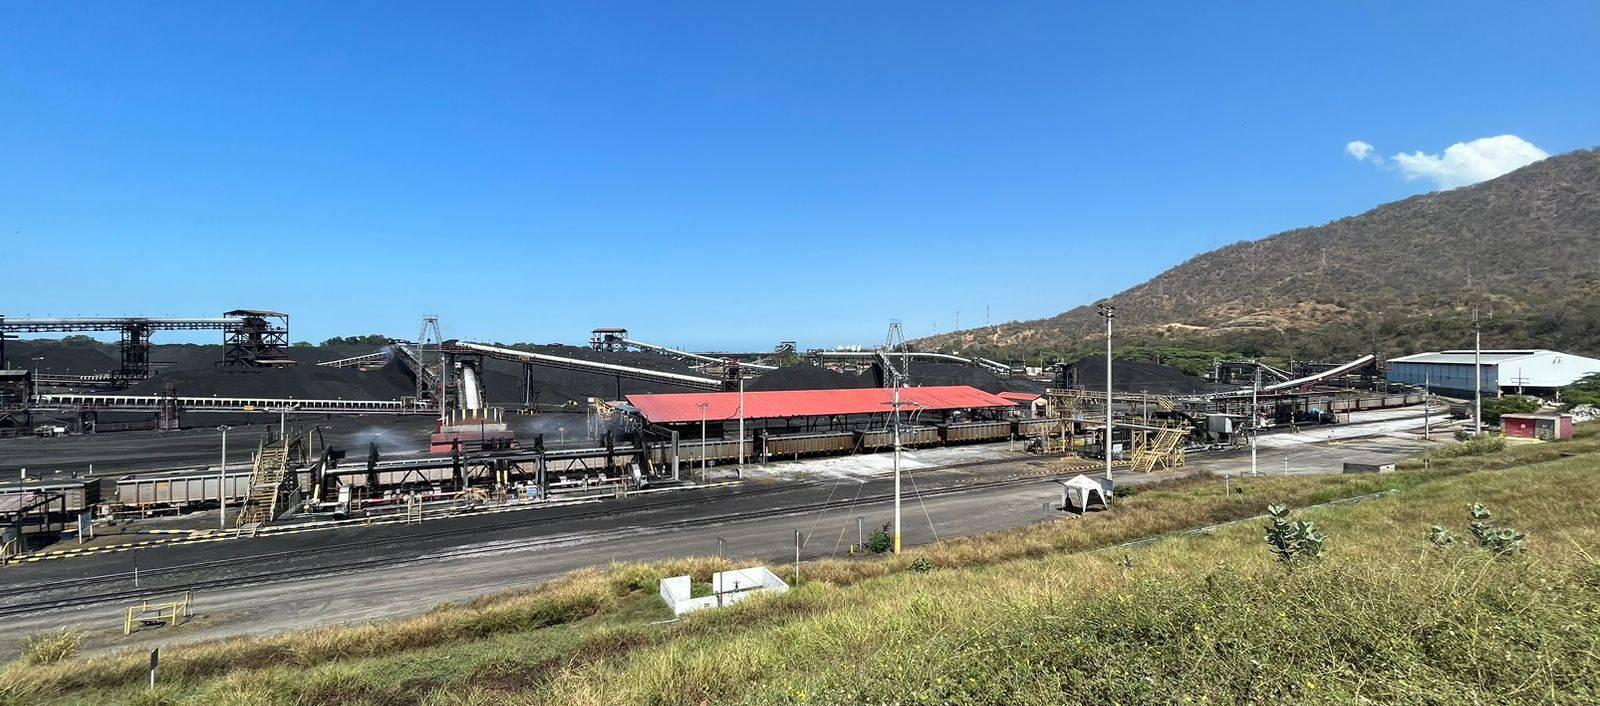 La Drummond concentra la exploración, explotación, transporte y exportación de carbón desde minas en el Cesar